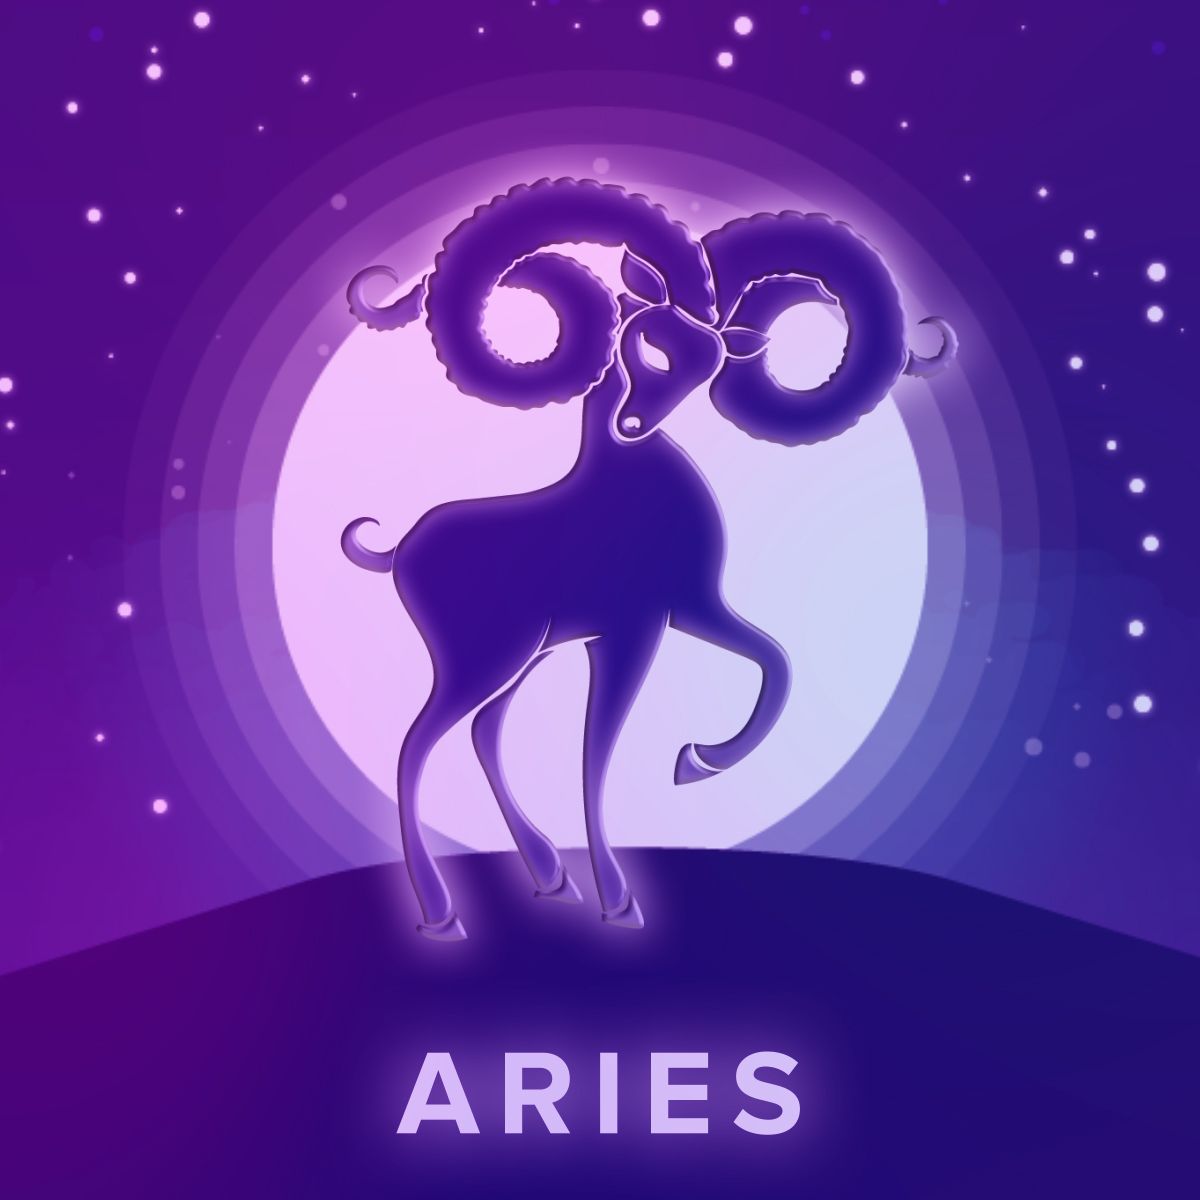 Aries #Zodiac #Starsign #Horoscopes. Aries wallpaper, Aries art, Aries aesthetic